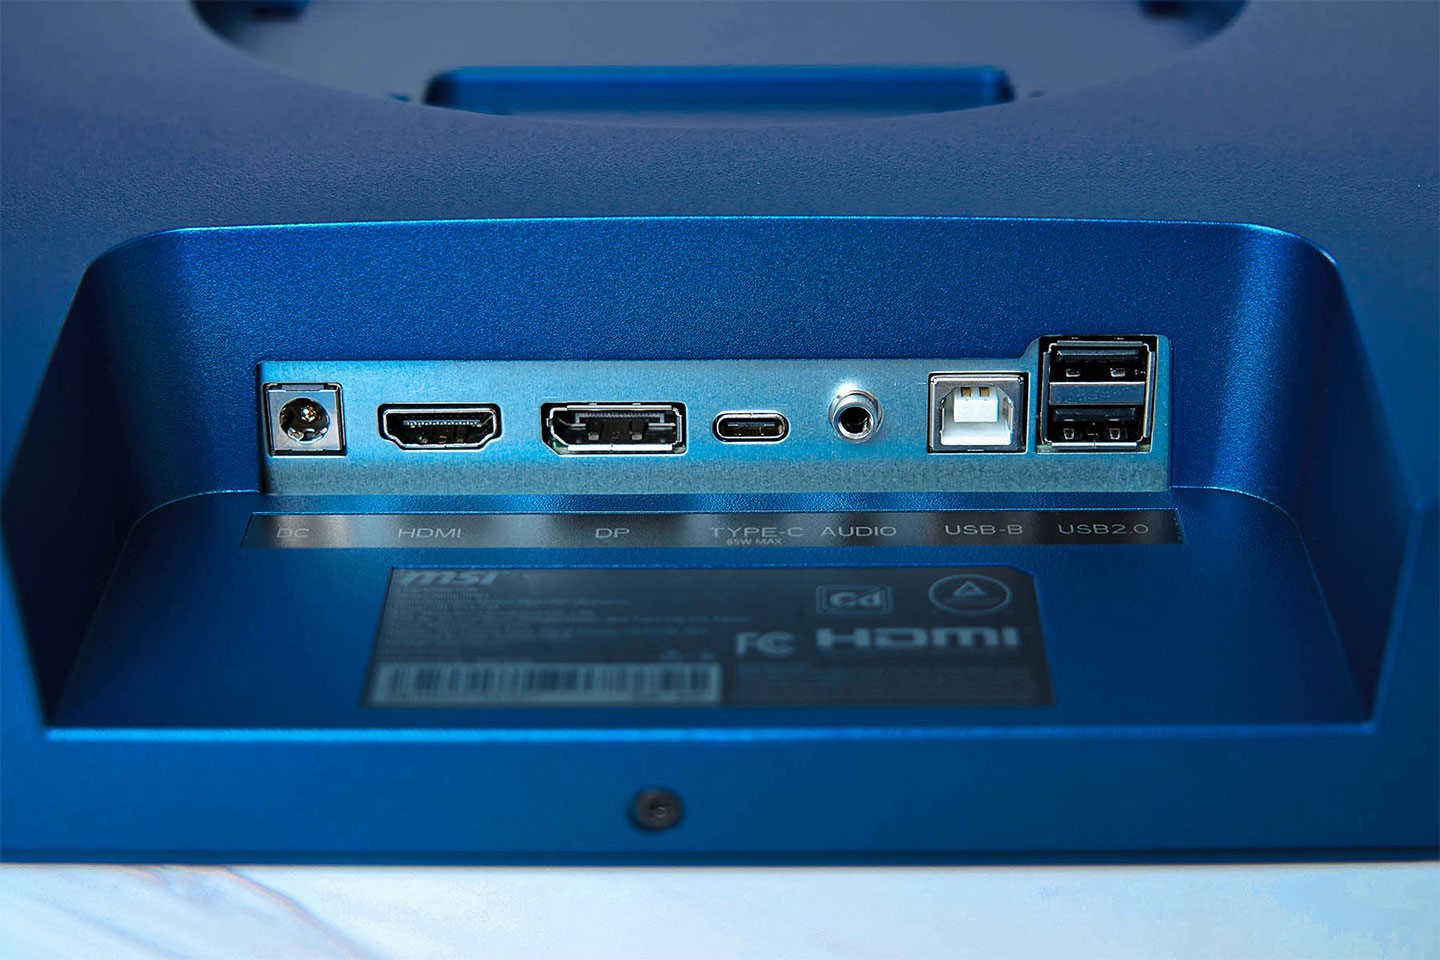 各種連結埠規劃於顯示器底部，包含電源接口、HDMI 埠、DisplayPort、USB Type-C、3.5 mm 音源輸出、USB Type-B 與兩組 USB 2.0（Type-A）埠。